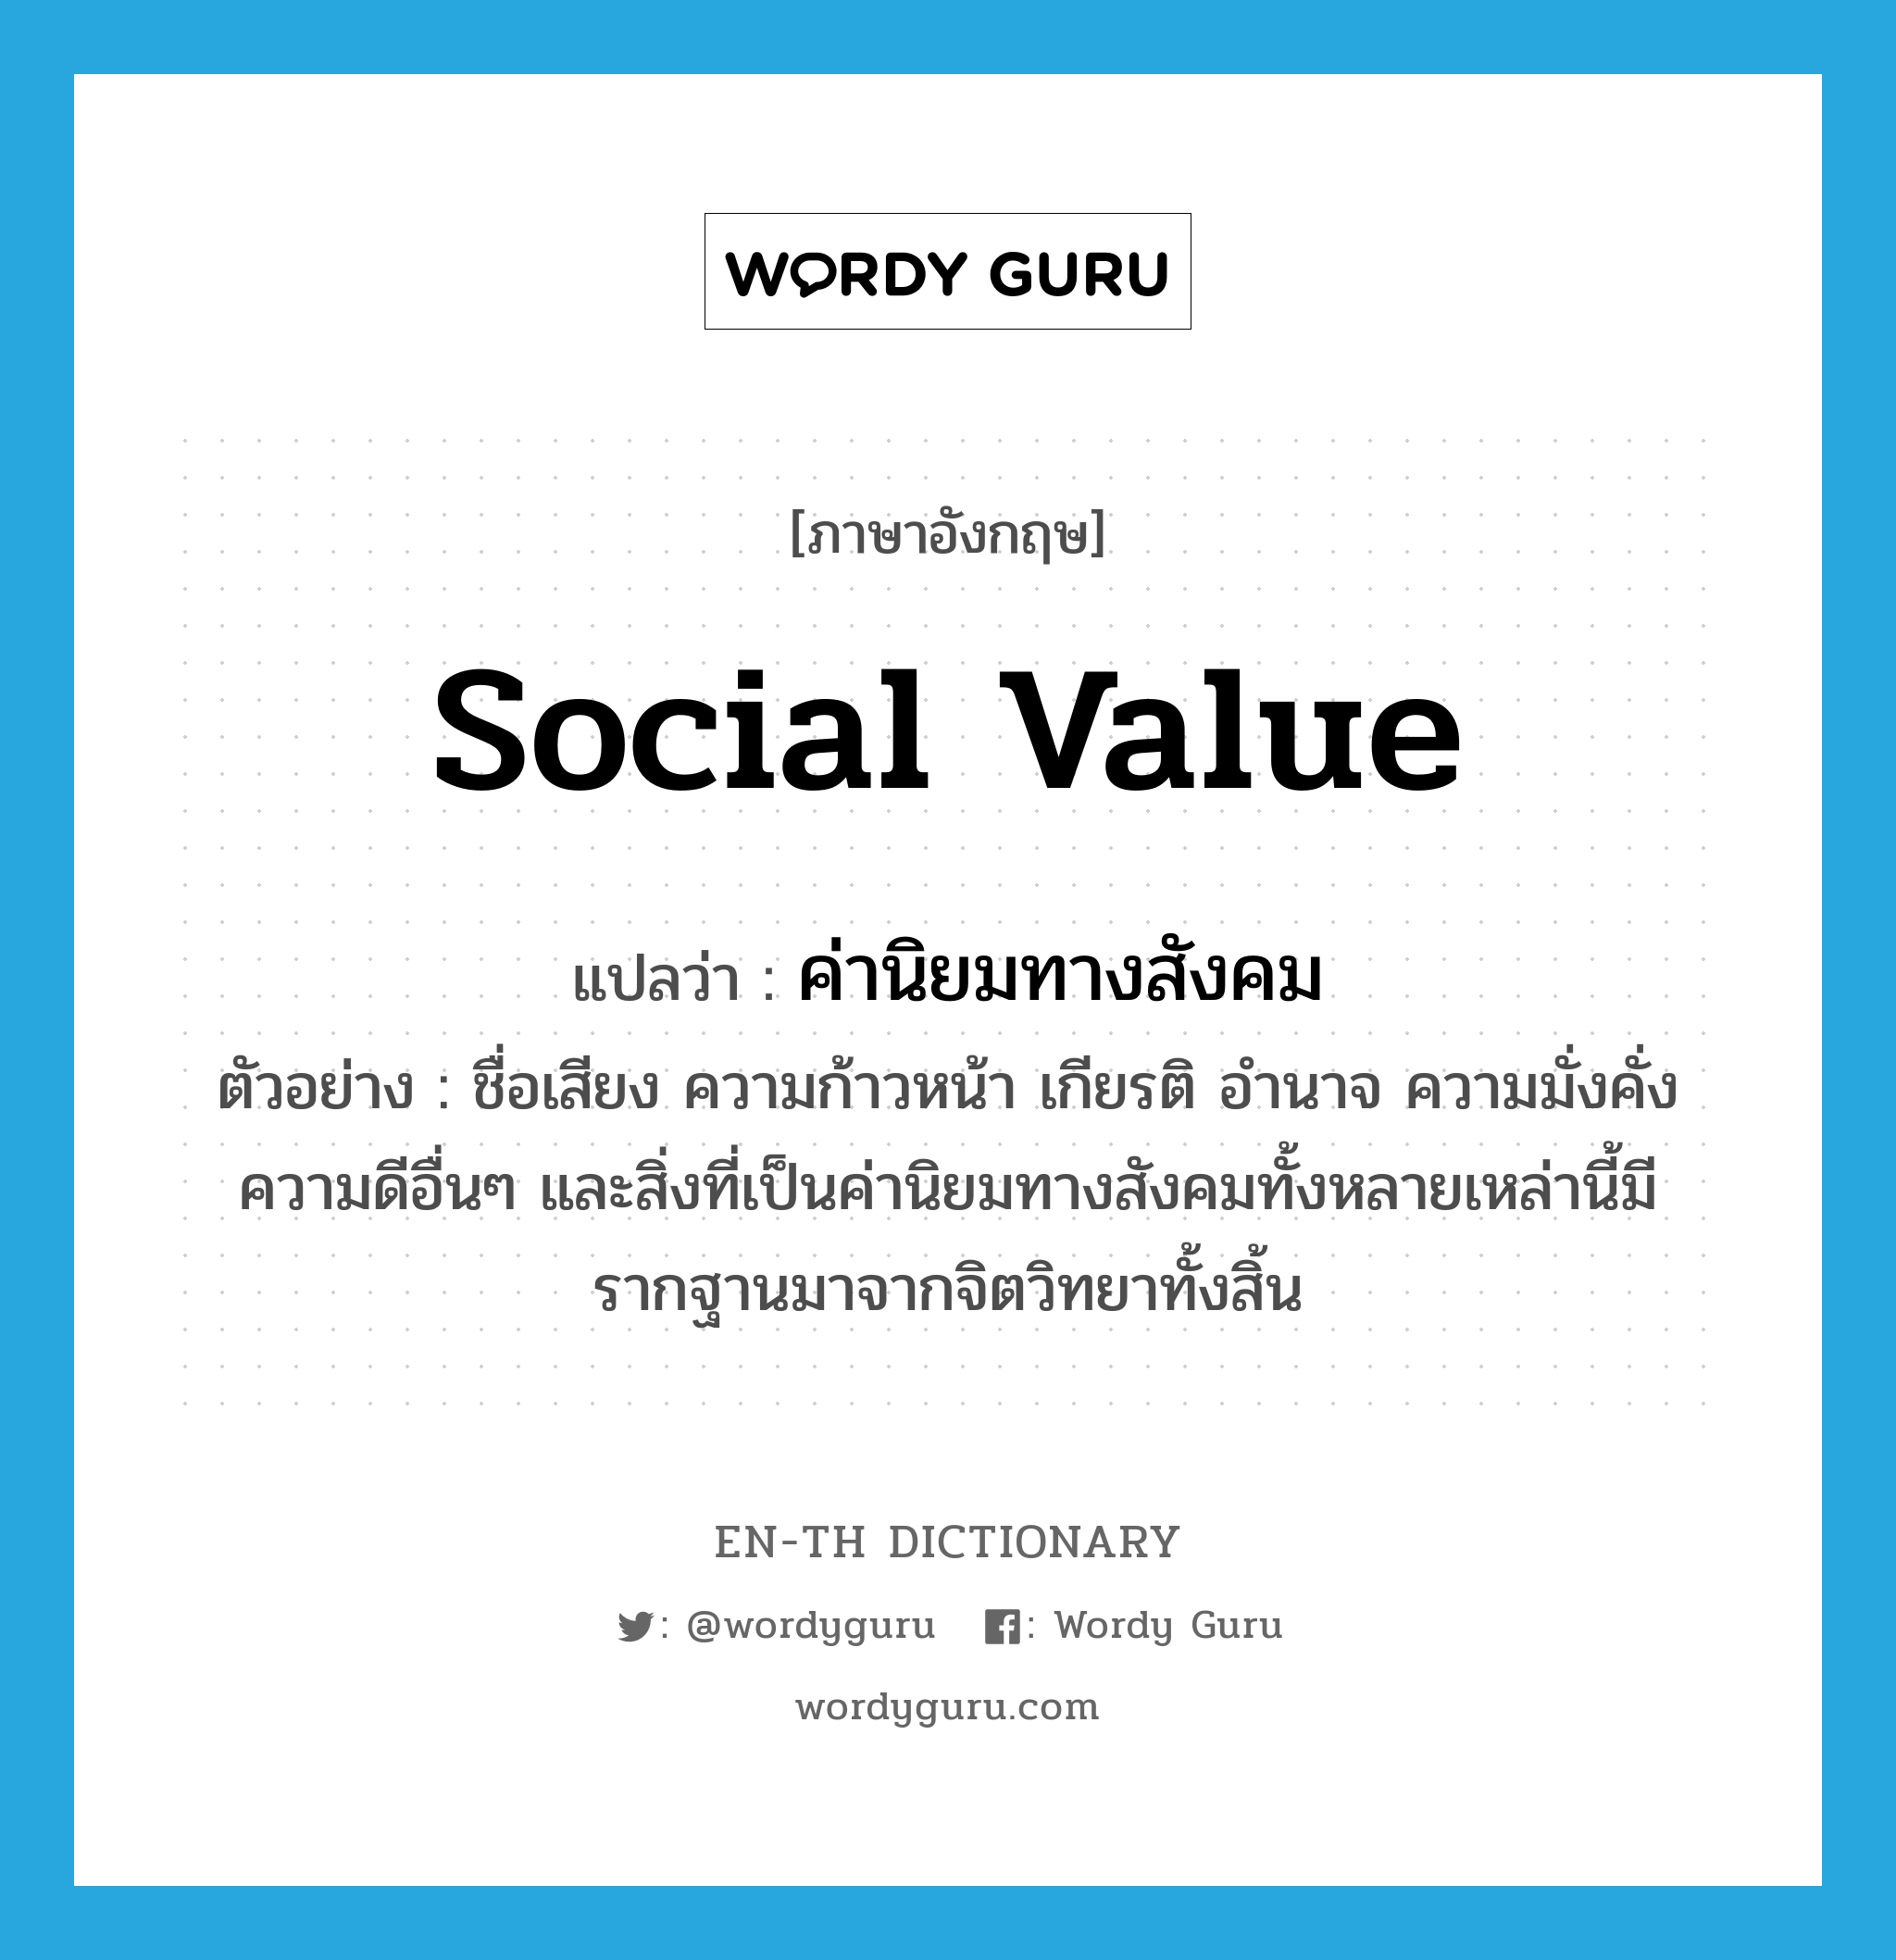 social value แปลว่า?, คำศัพท์ภาษาอังกฤษ social value แปลว่า ค่านิยมทางสังคม ประเภท N ตัวอย่าง ชื่อเสียง ความก้าวหน้า เกียรติ อำนาจ ความมั่งคั่ง ความดีอื่นๆ และสิ่งที่เป็นค่านิยมทางสังคมทั้งหลายเหล่านี้มีรากฐานมาจากจิตวิทยาทั้งสิ้น หมวด N